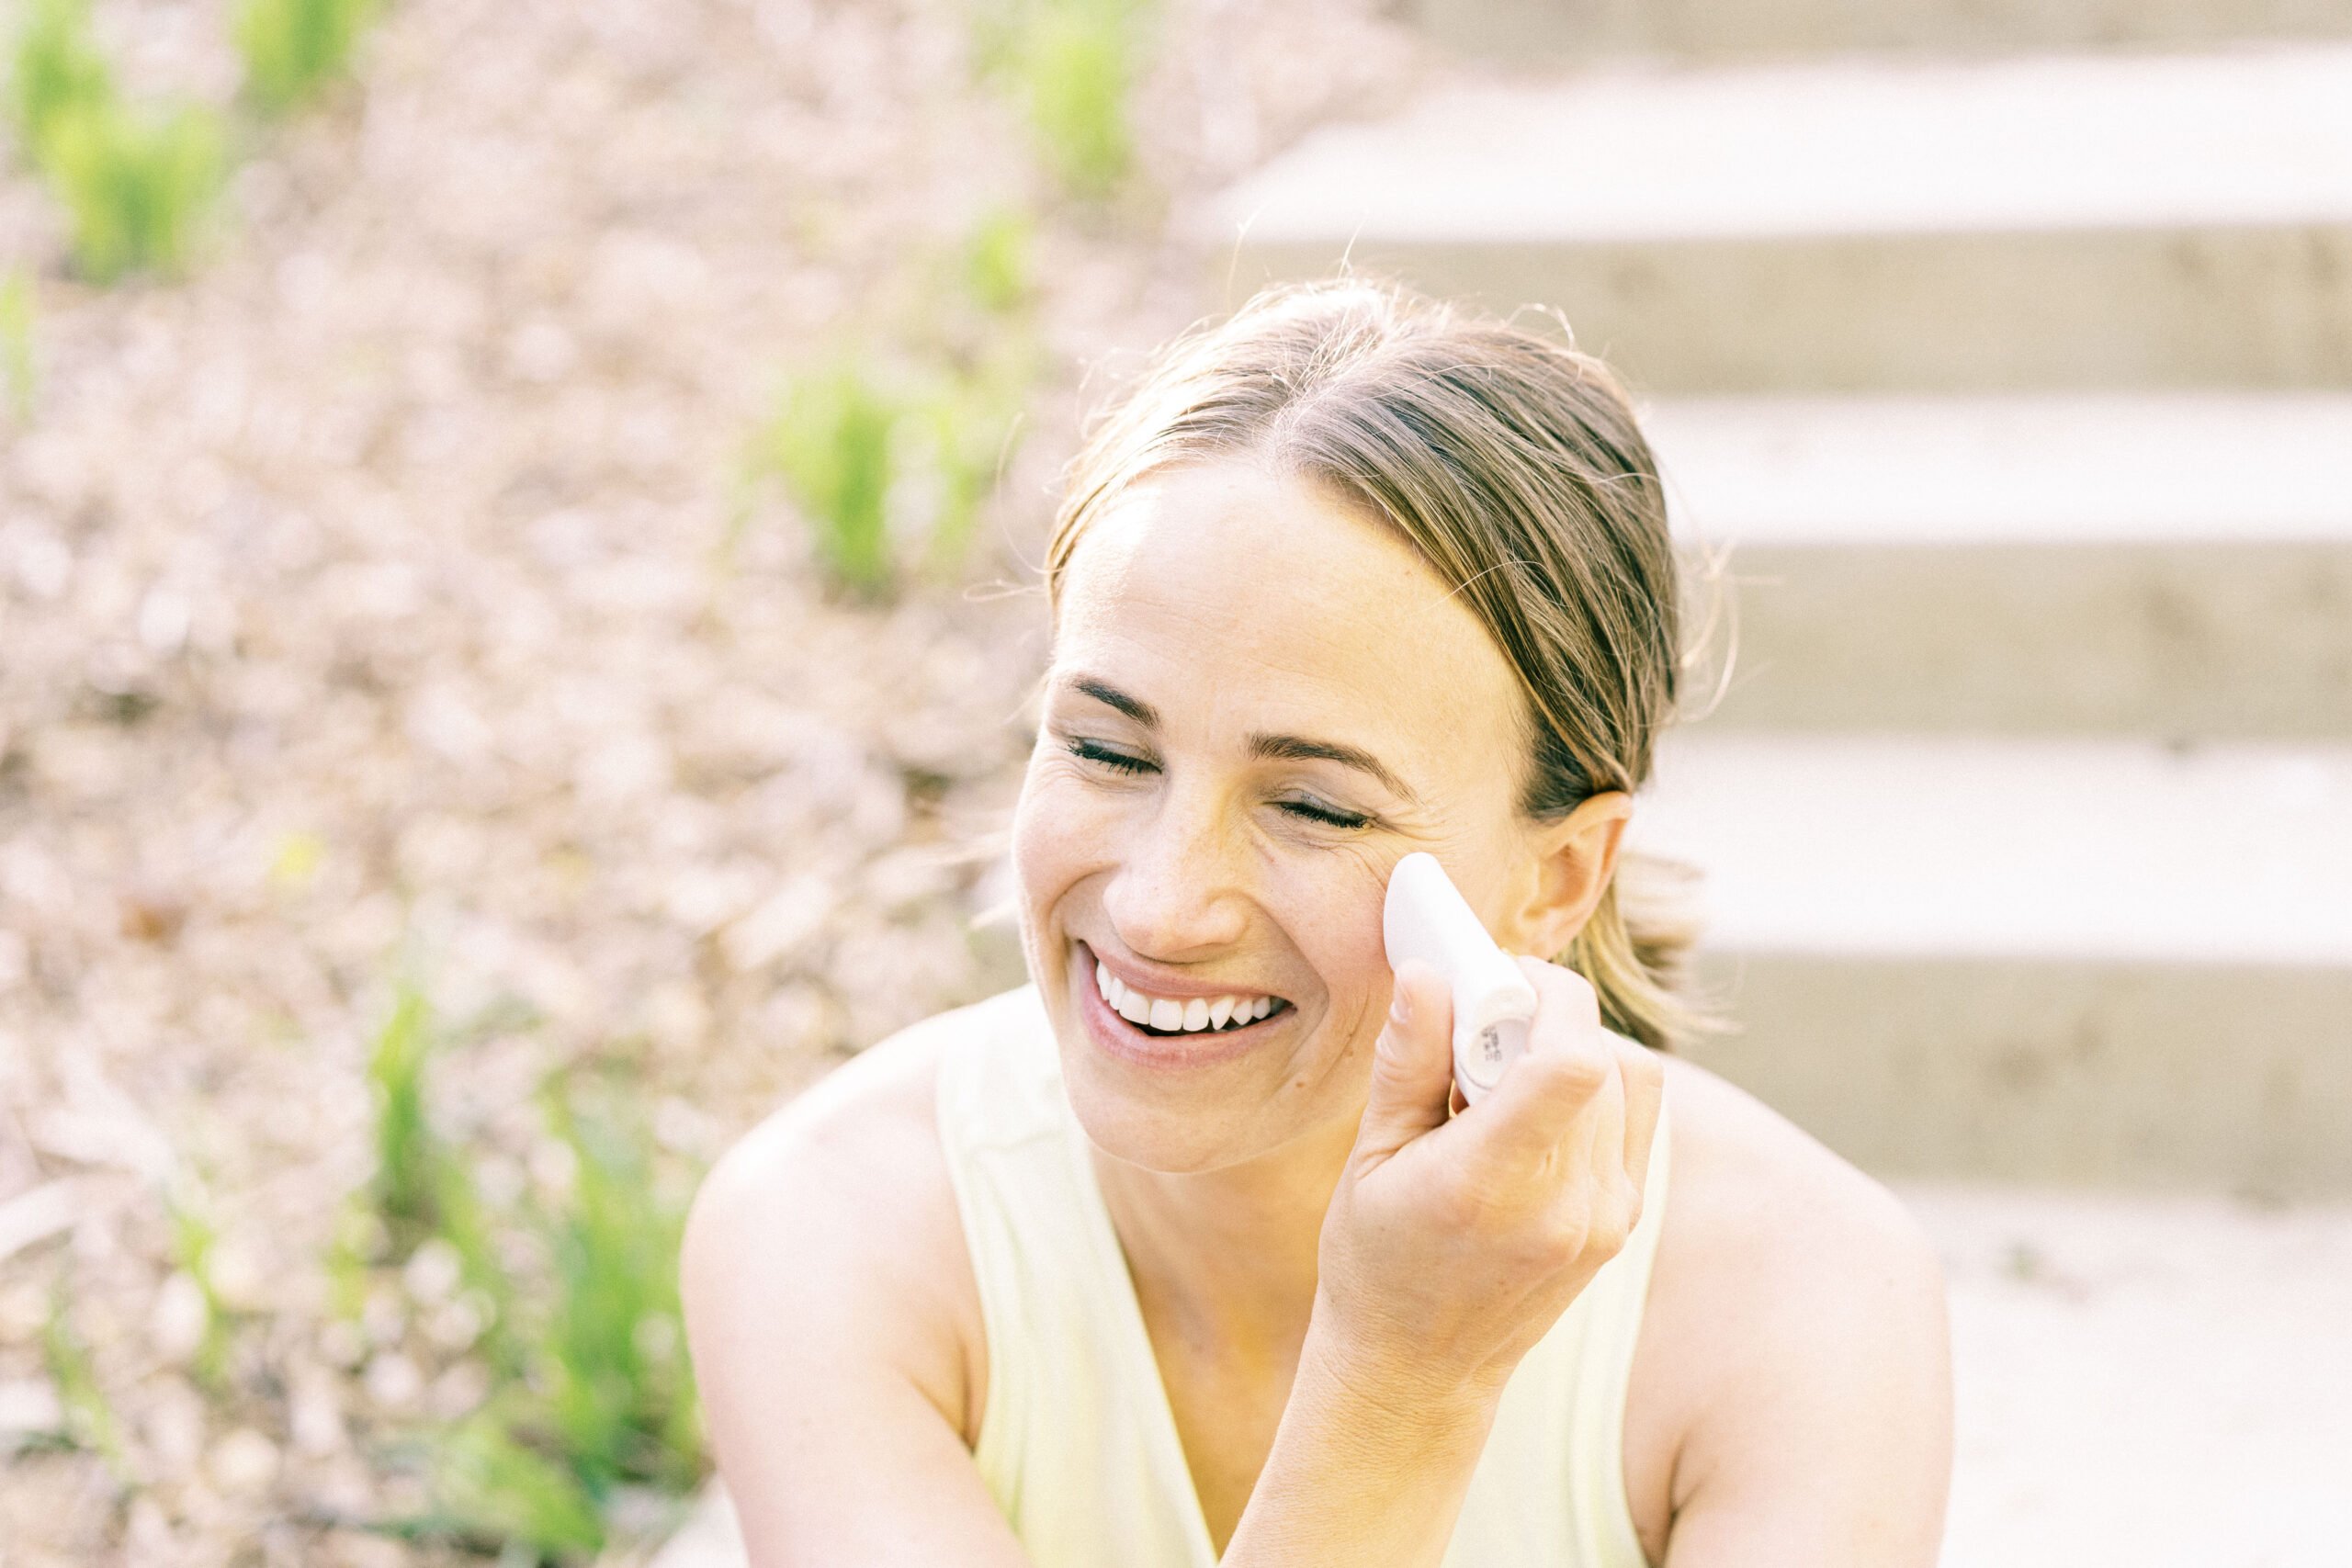 sunscreen stick on face | Beautycounter Sunscreen Review